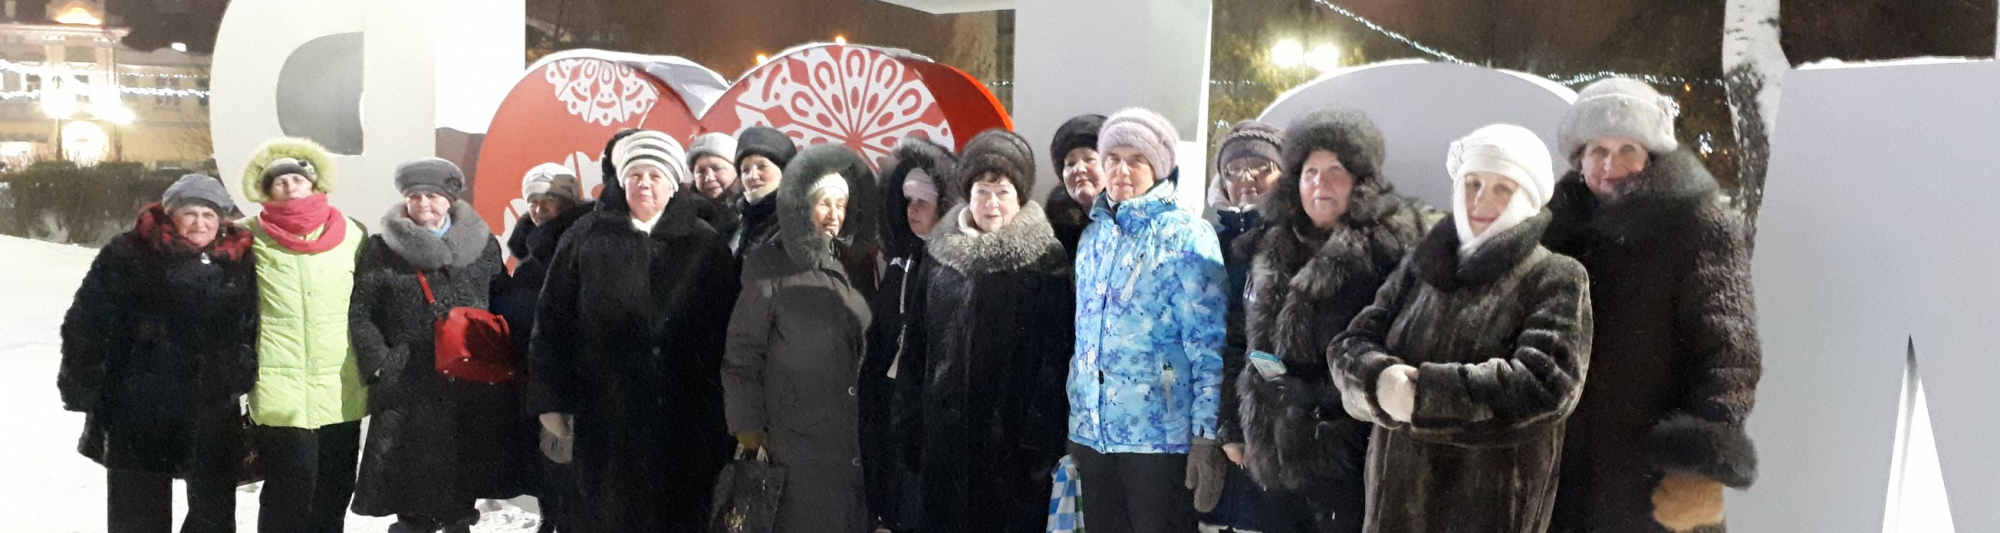 Совет ветеранов Академического округа посетил главные новогодние площадки Томска